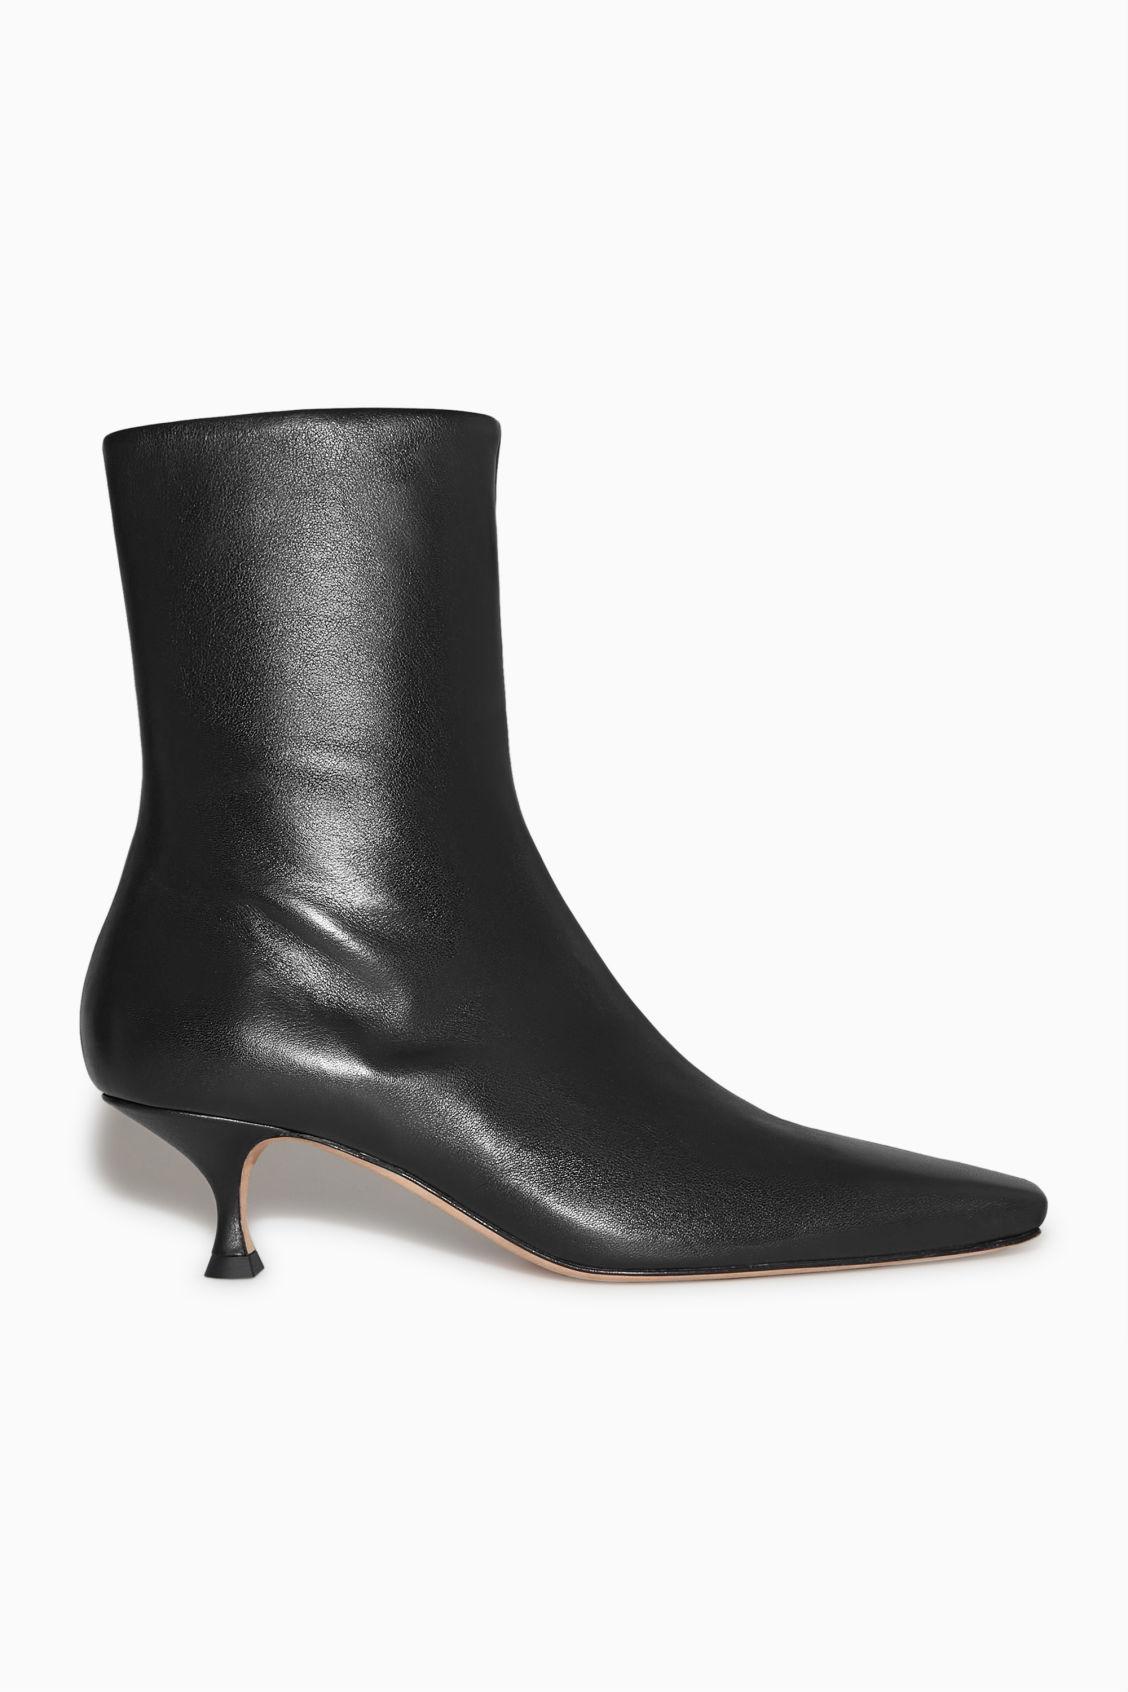 COS Kitten-heel Leather Sock Boots in Black | Lyst